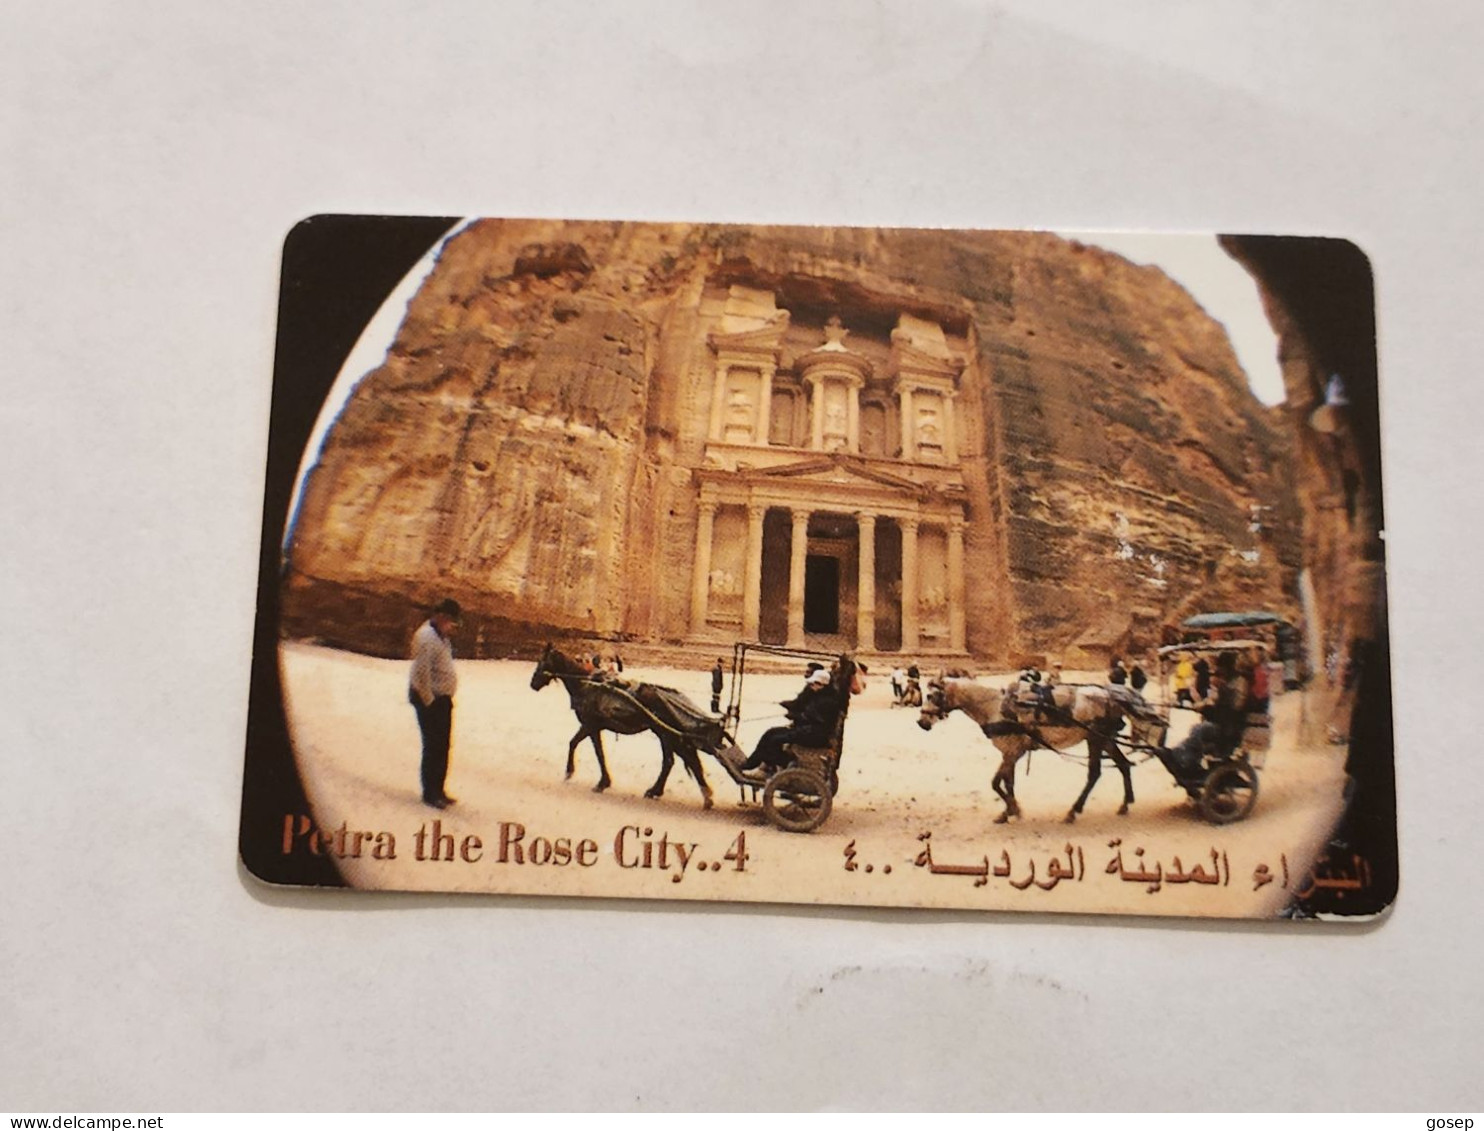 JORDAN-(JO-ALO-0078)-Petra-The Rose City4-(200)-(4000-187203)-(1JD)-(04/2001)-used Card+1card Prepiad Free - Jordan